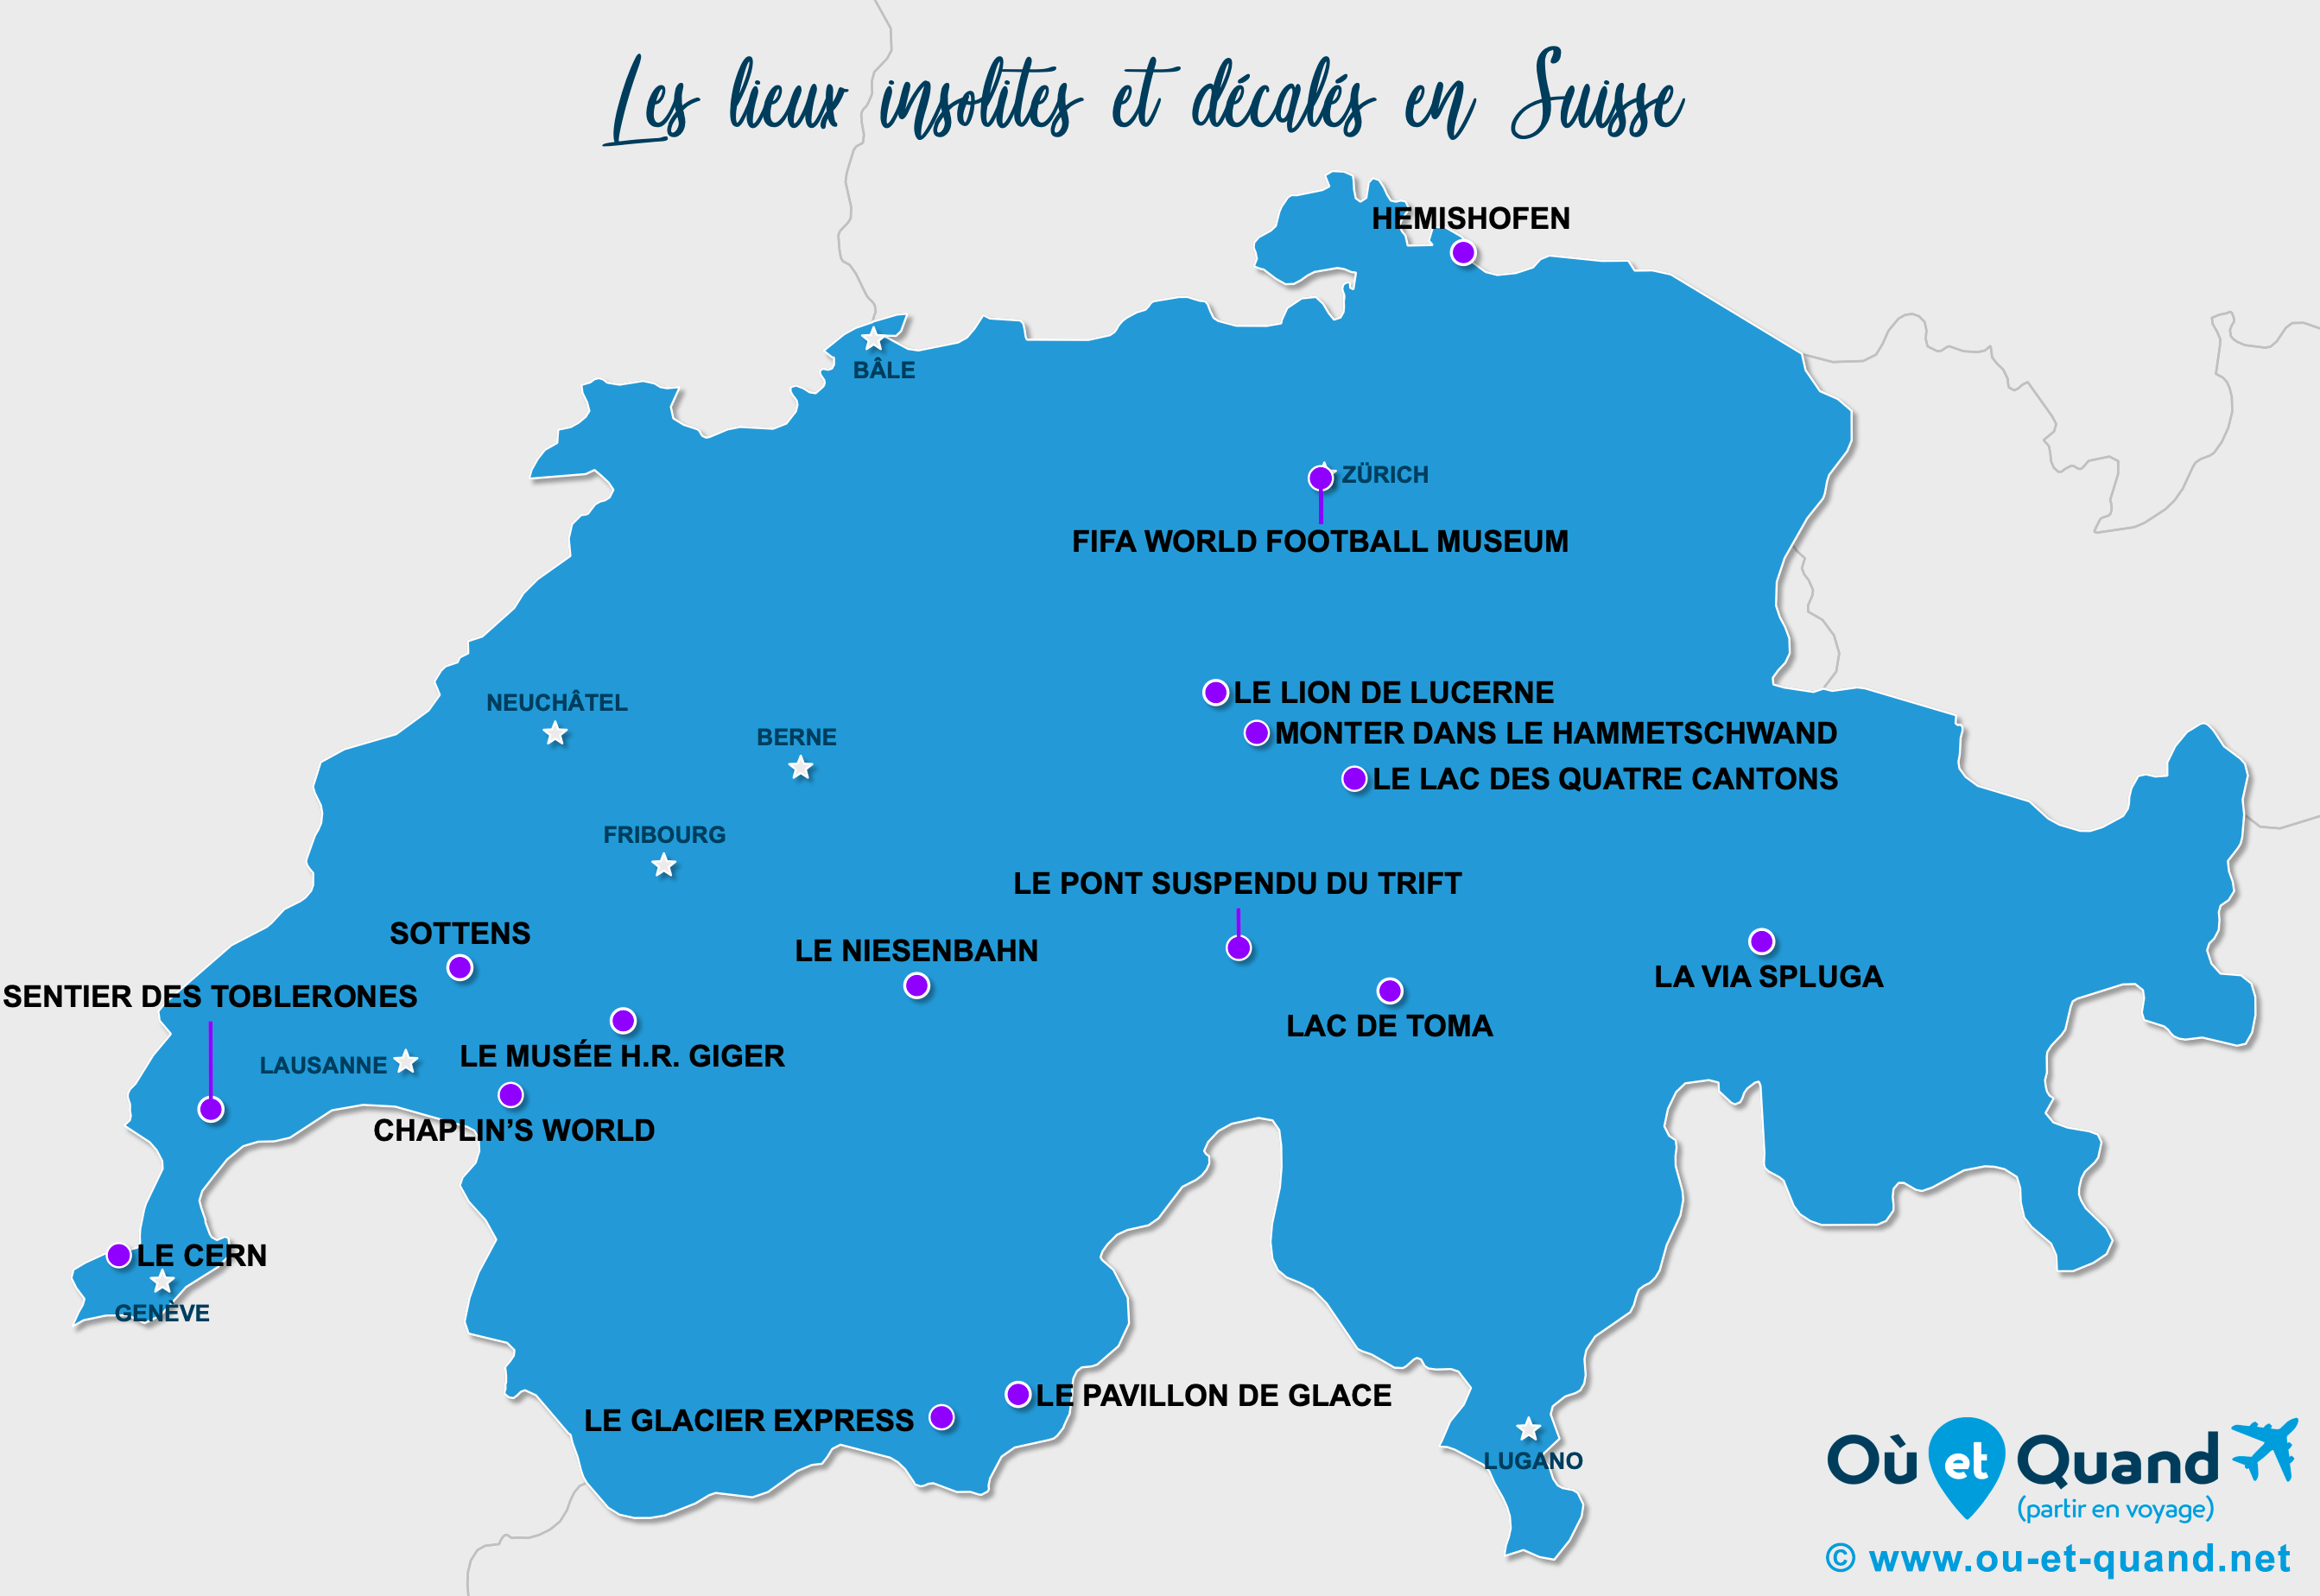 La carte des lieux insolites en Suisse